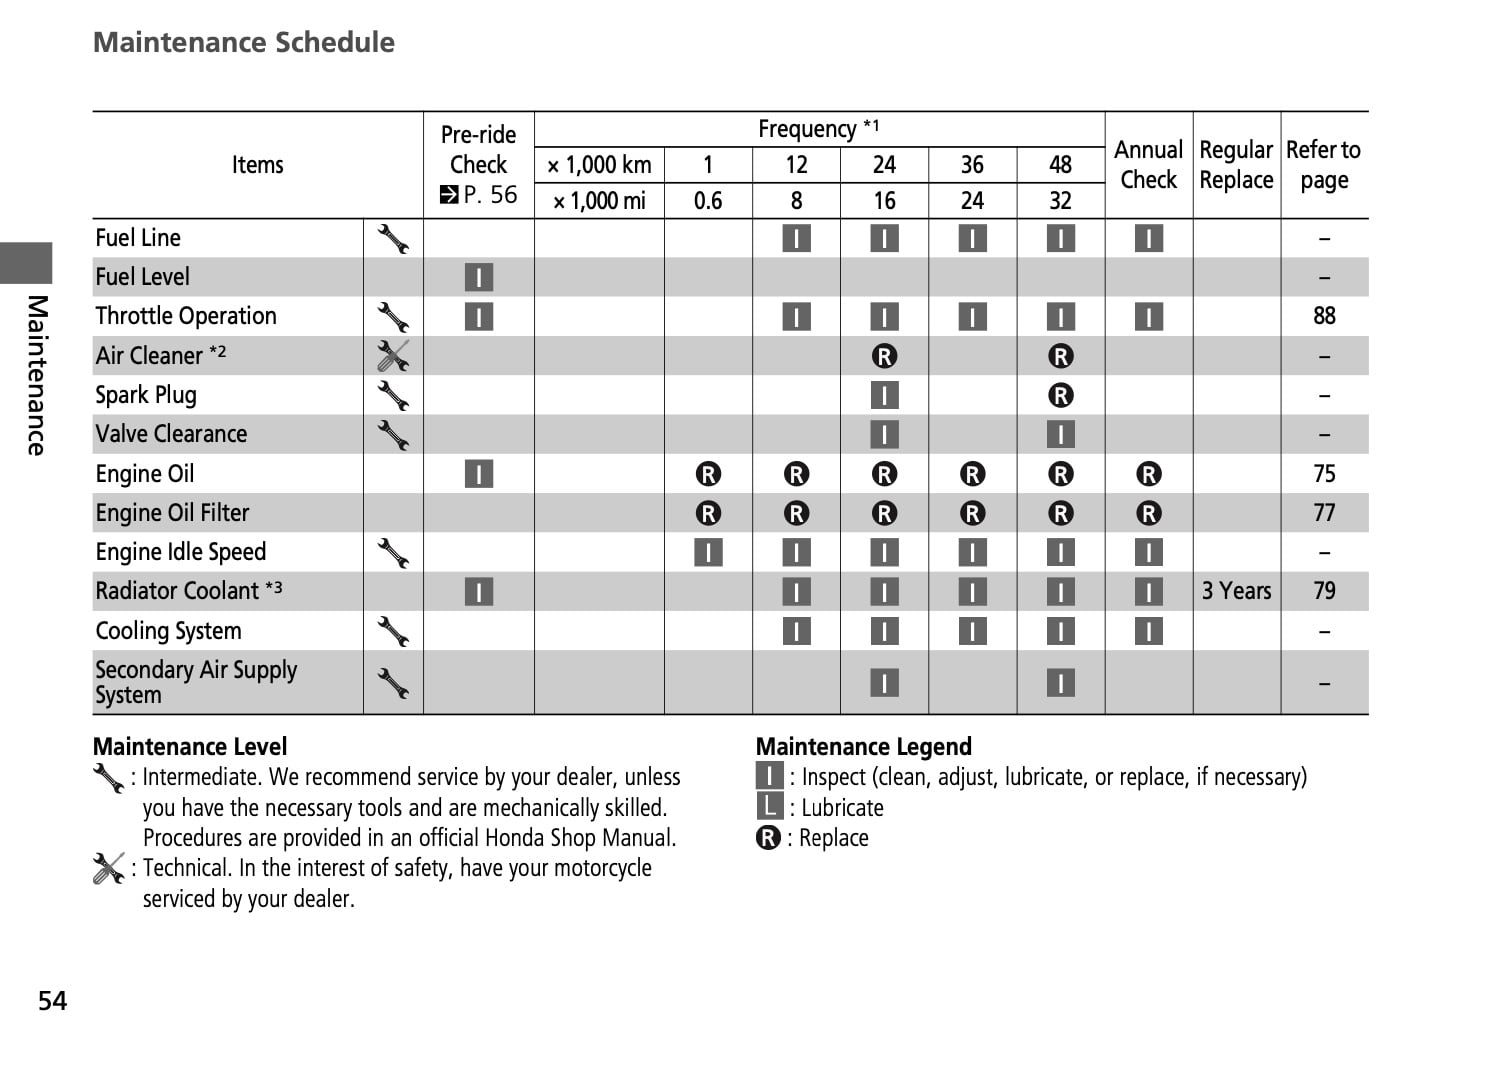 Honda VFR800X Crossrunner 2nd gen 2015 Maintenance Schedule Screenshot from manual 2